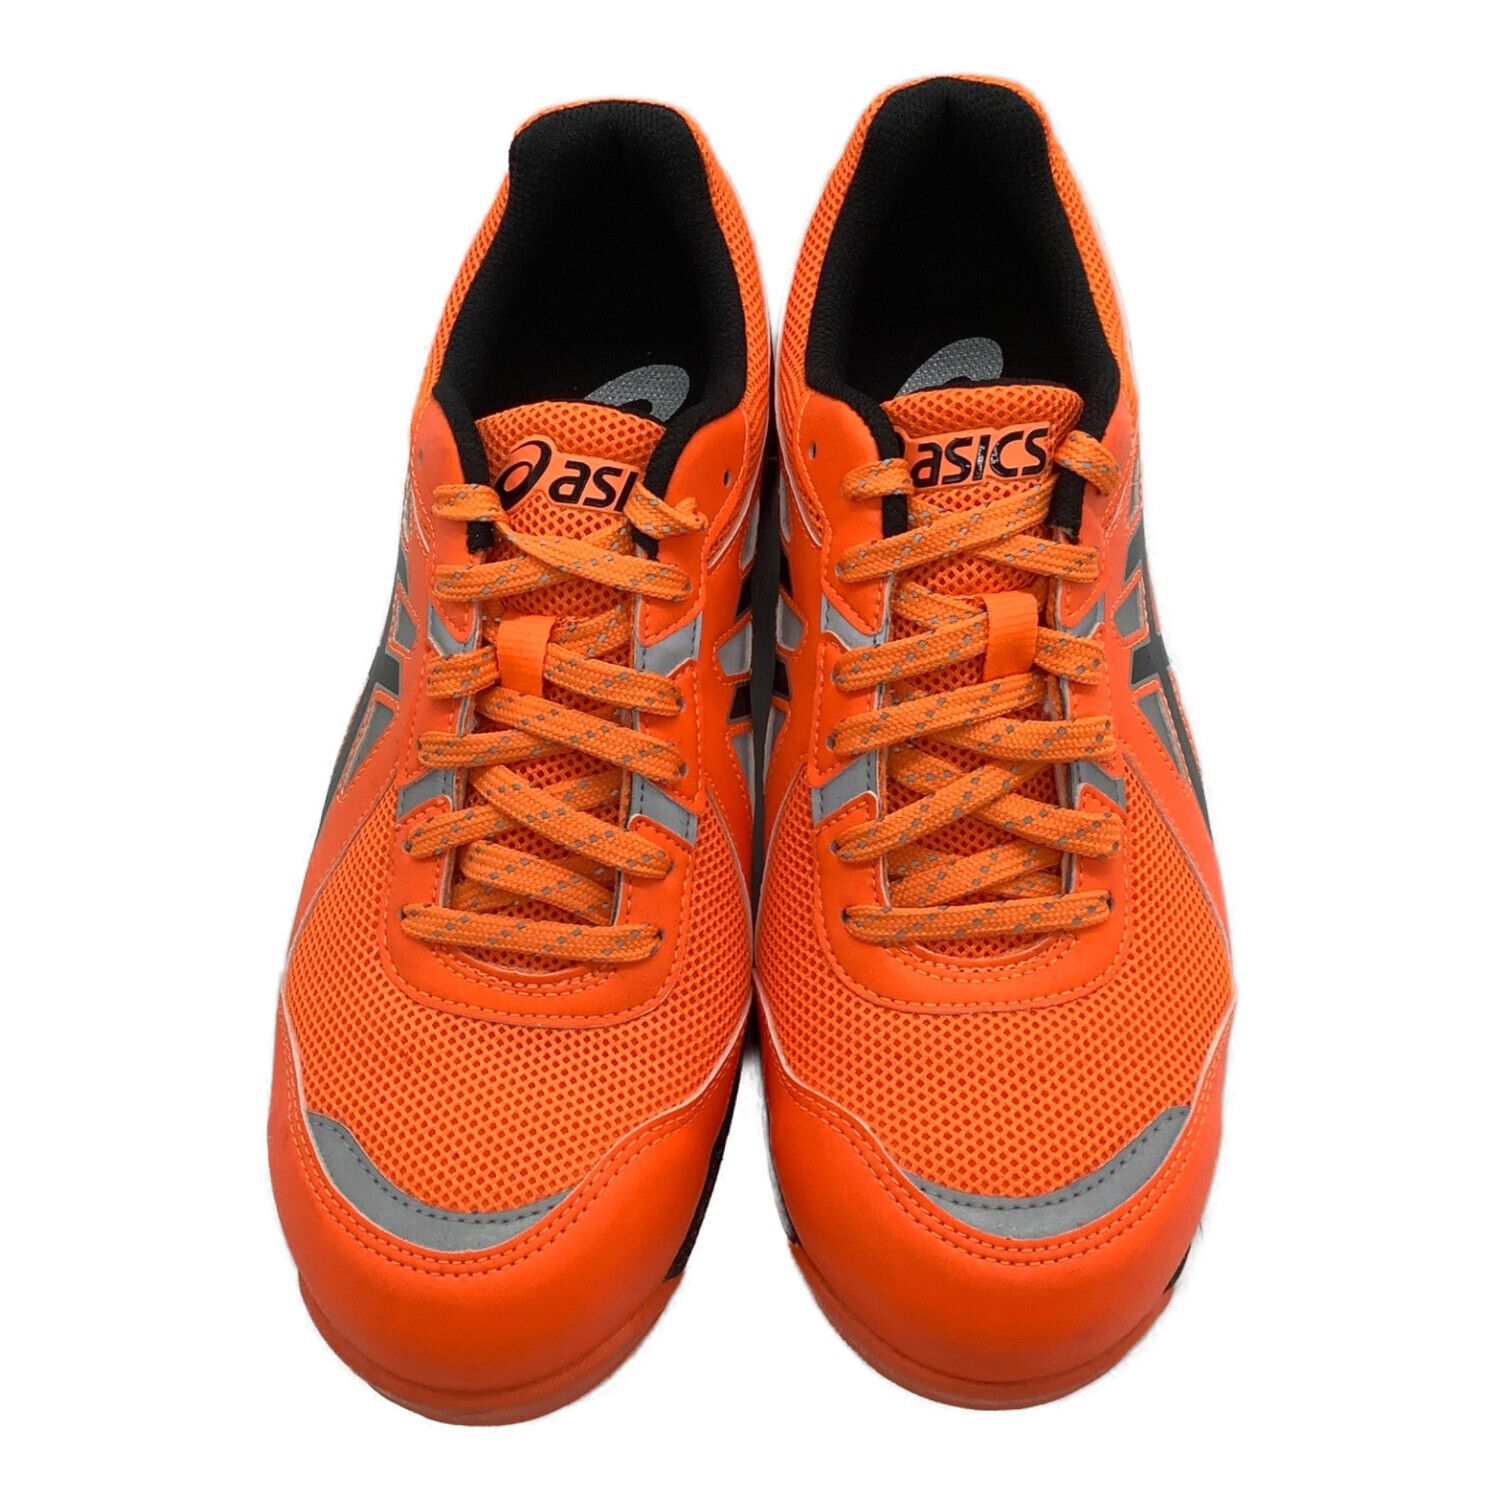 asics (アシックス) 安全靴 メンズ SIZE 26.5cm オレンジ×ブラック 